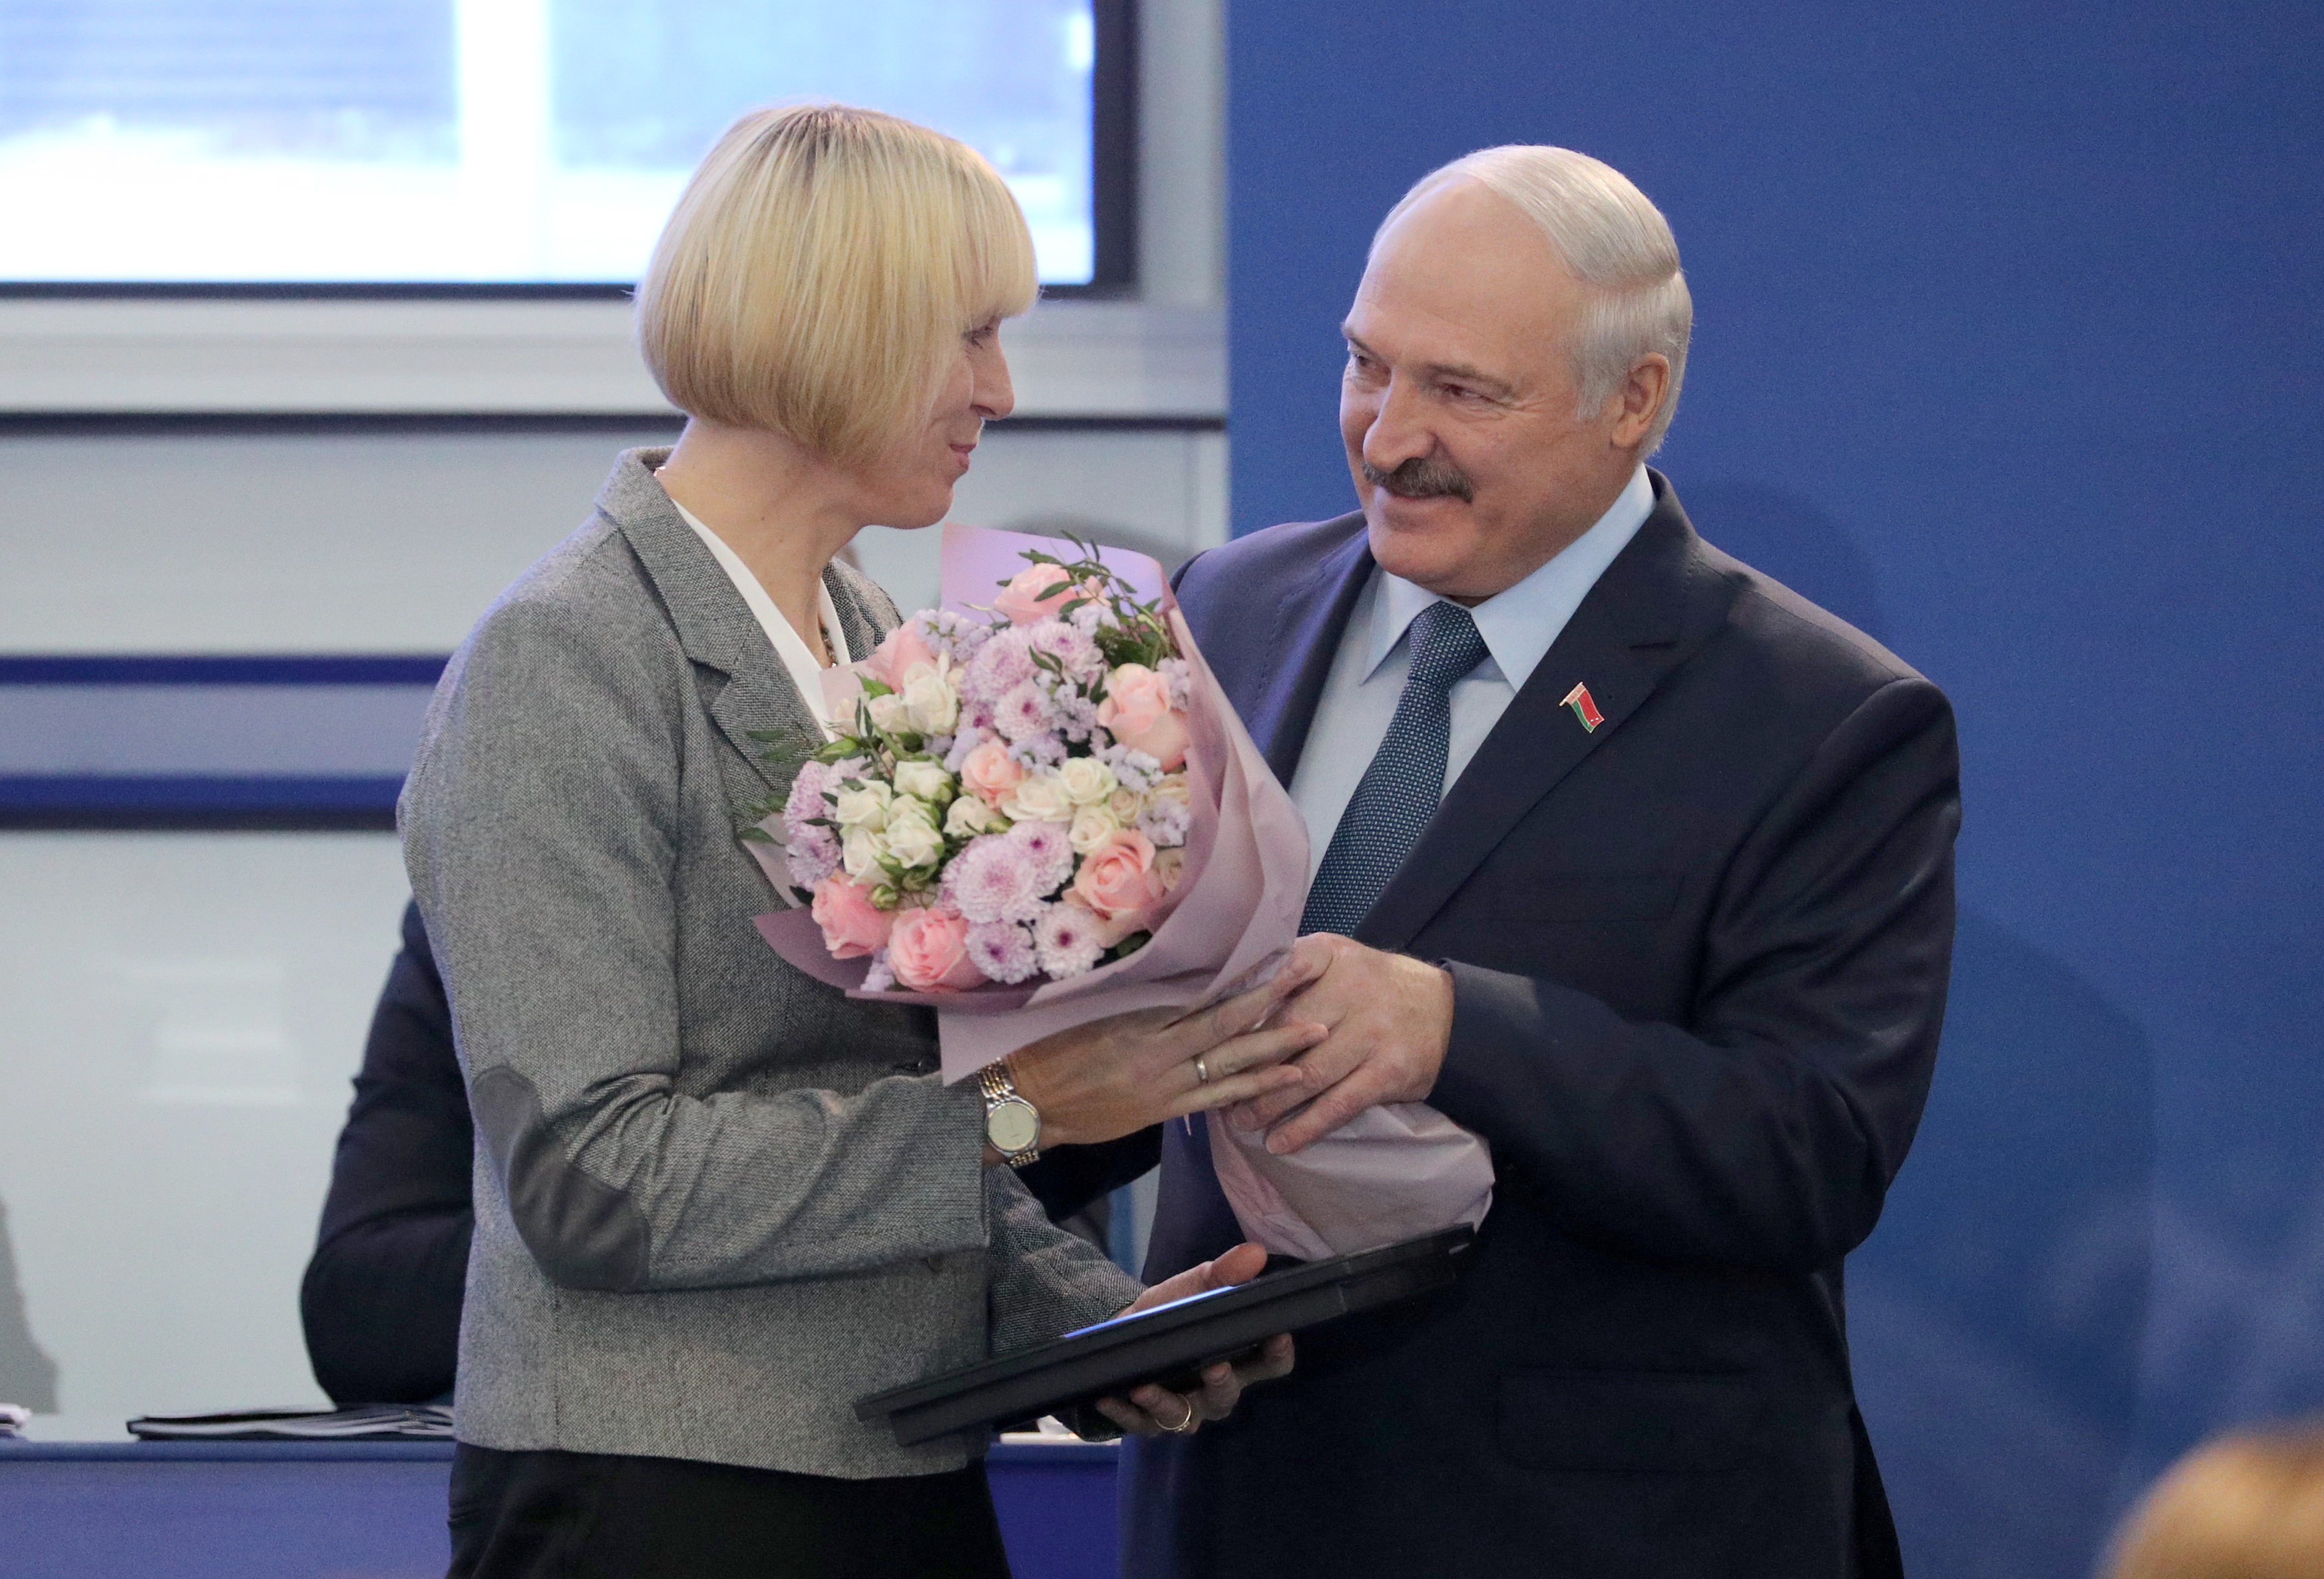 Karsten, Herasimenia honored by NOC Belarus